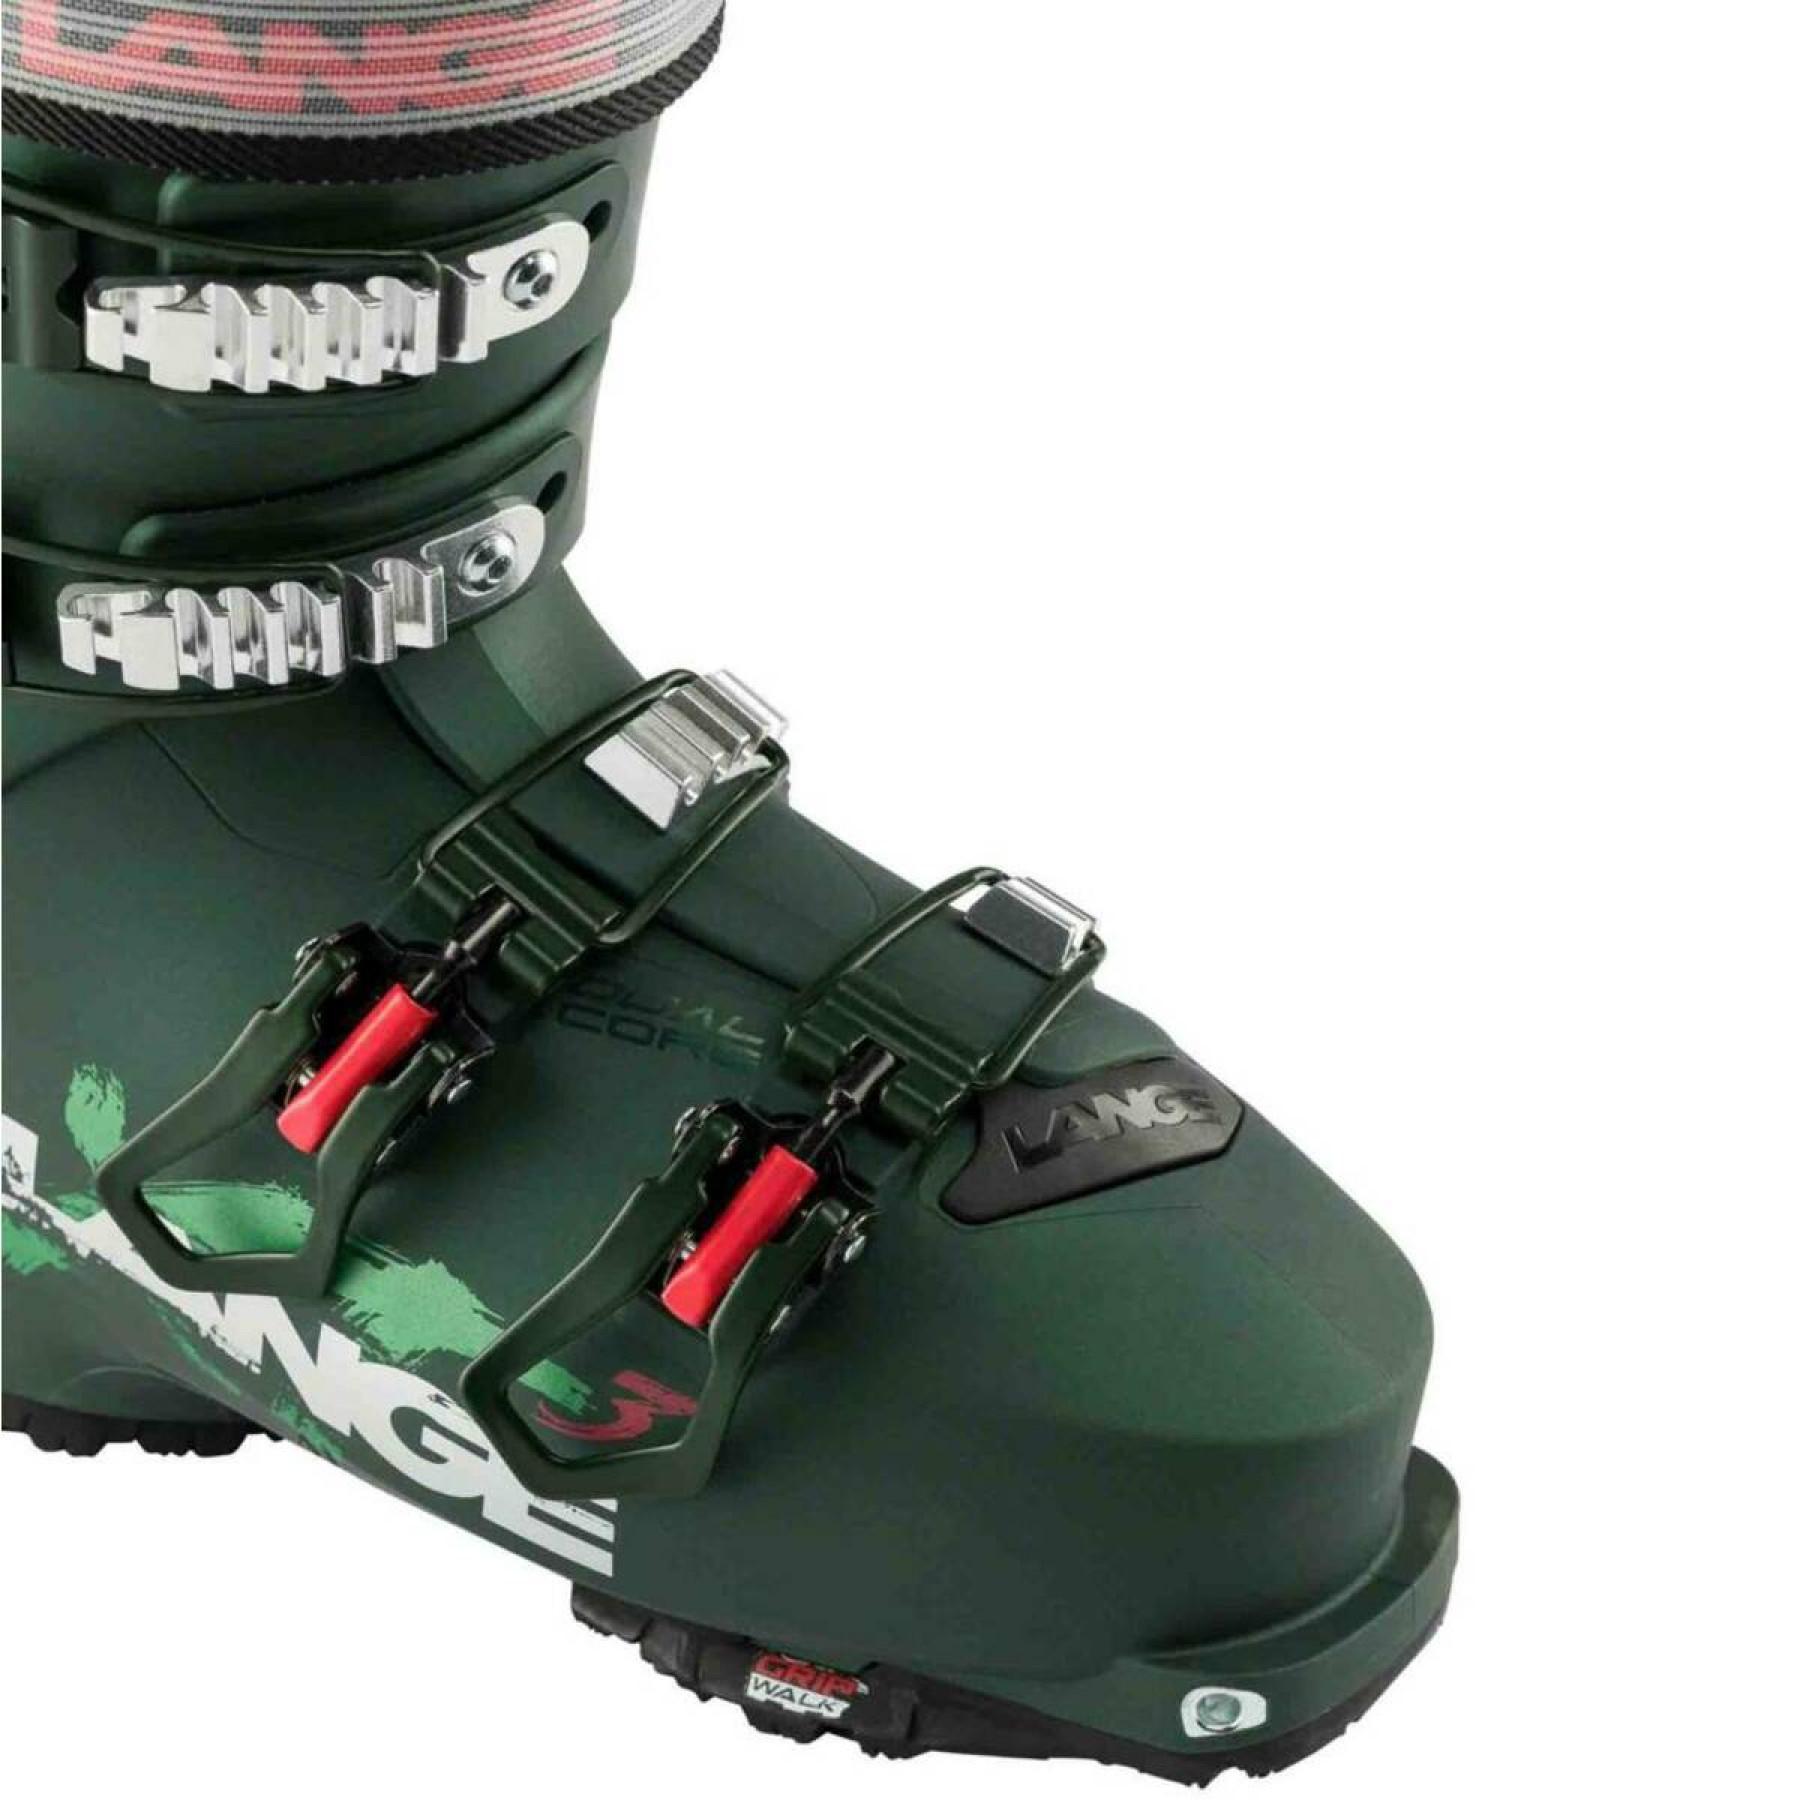 Damskie buty narciarskie Lange xt3 90 gw